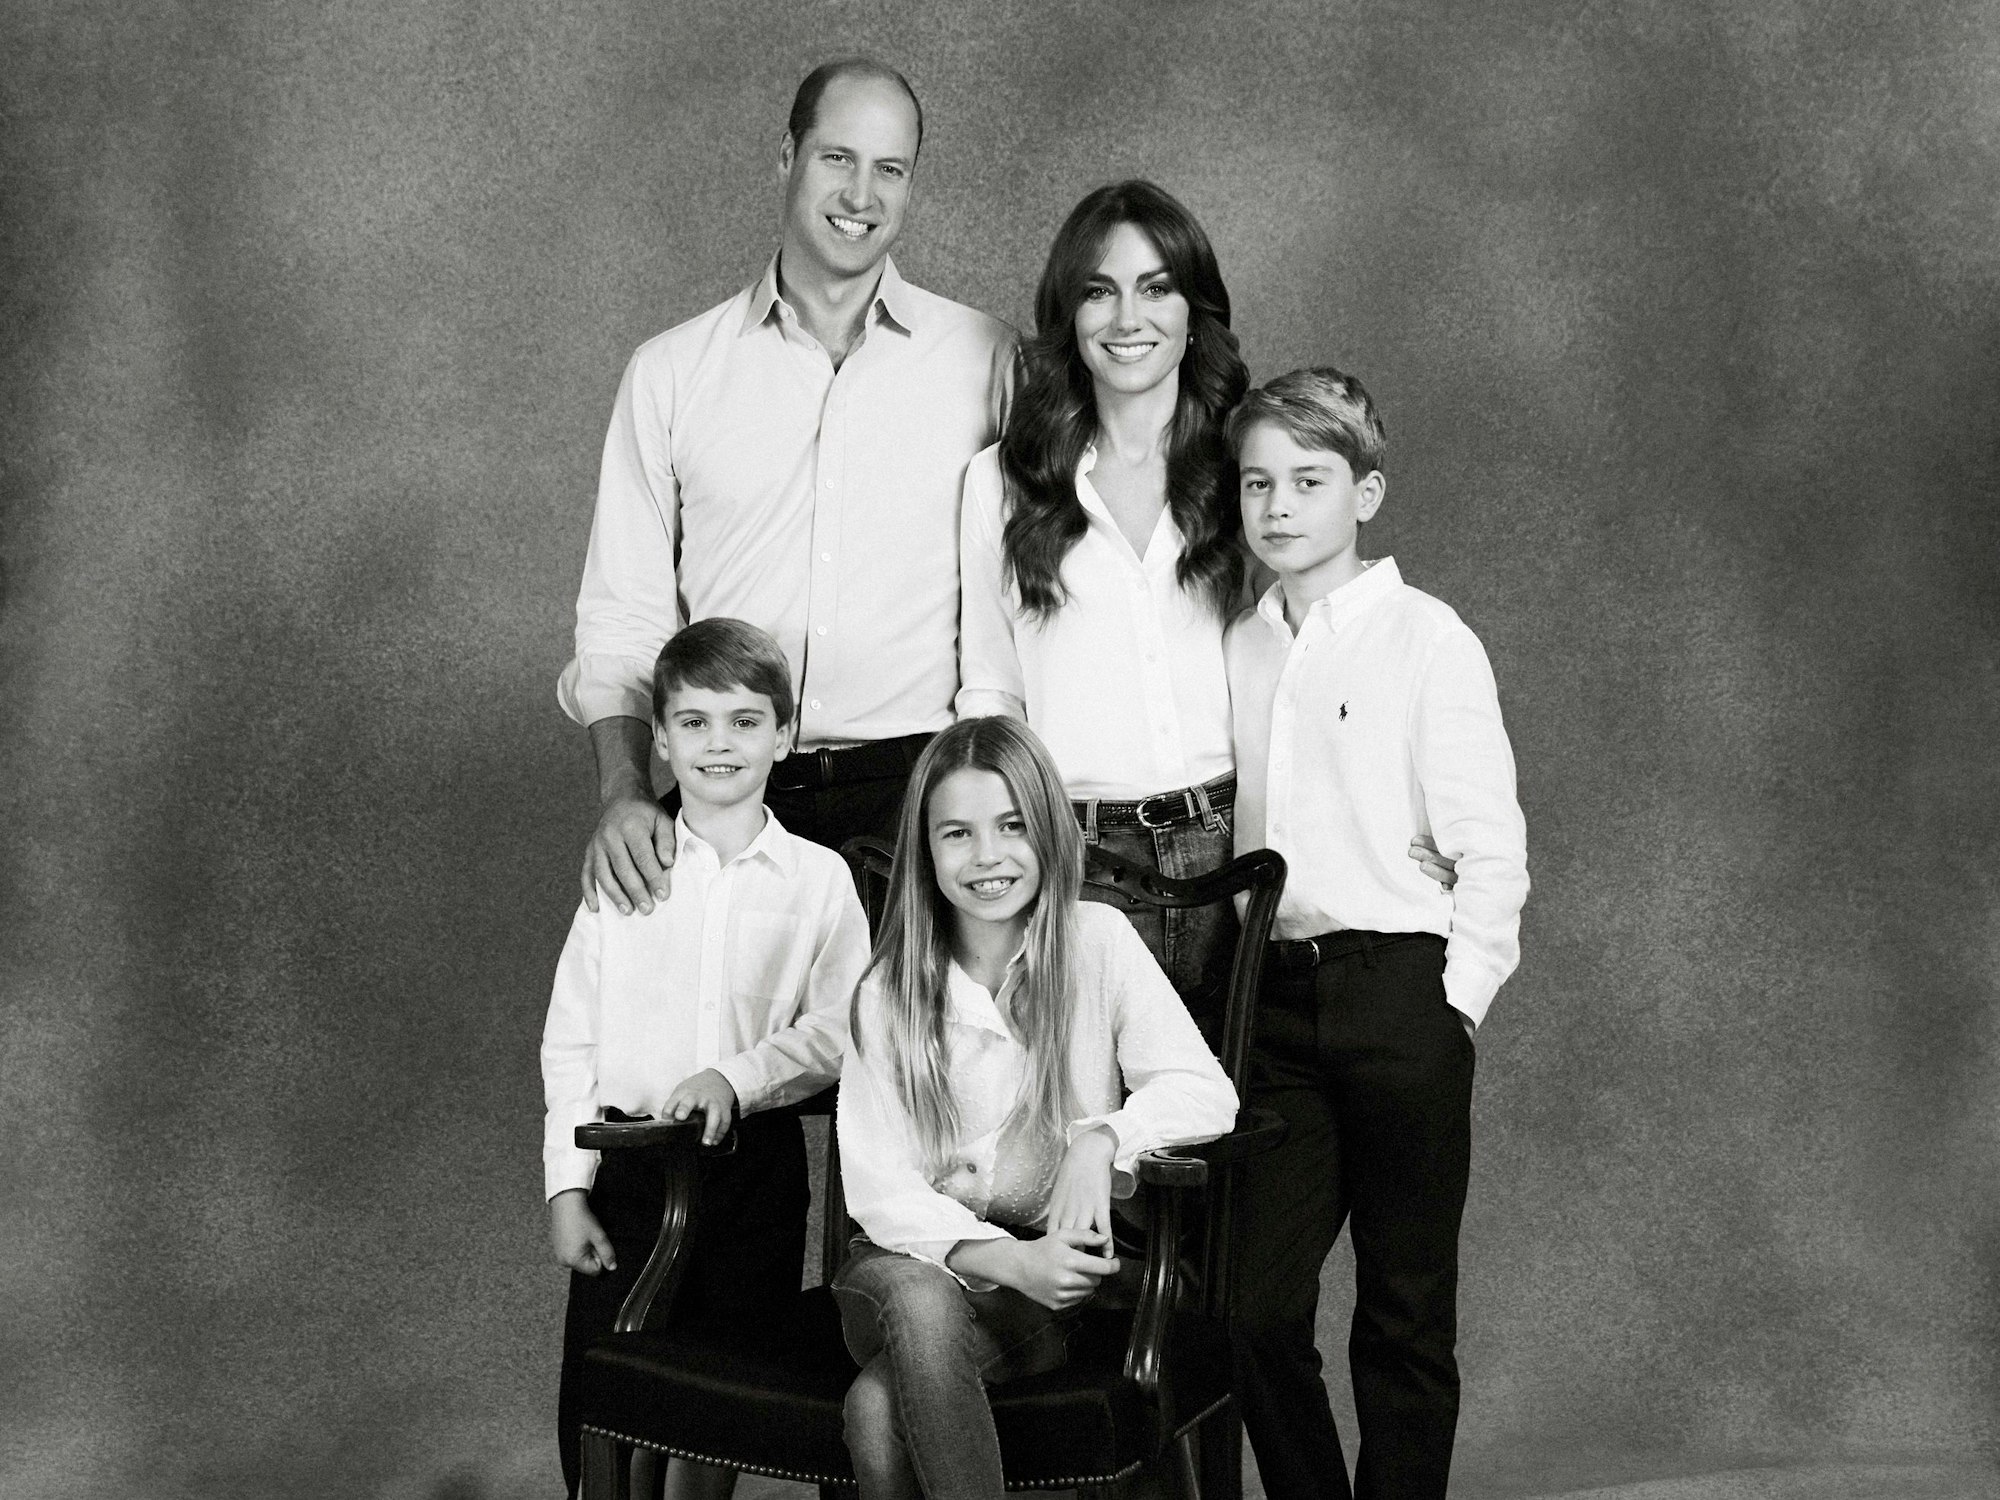 Prinz William, Prinzessin Kate, und ihre drei Kindern Prinz George, Prinzessin Charlotte und Prinz Louis posieren für die Kamera.